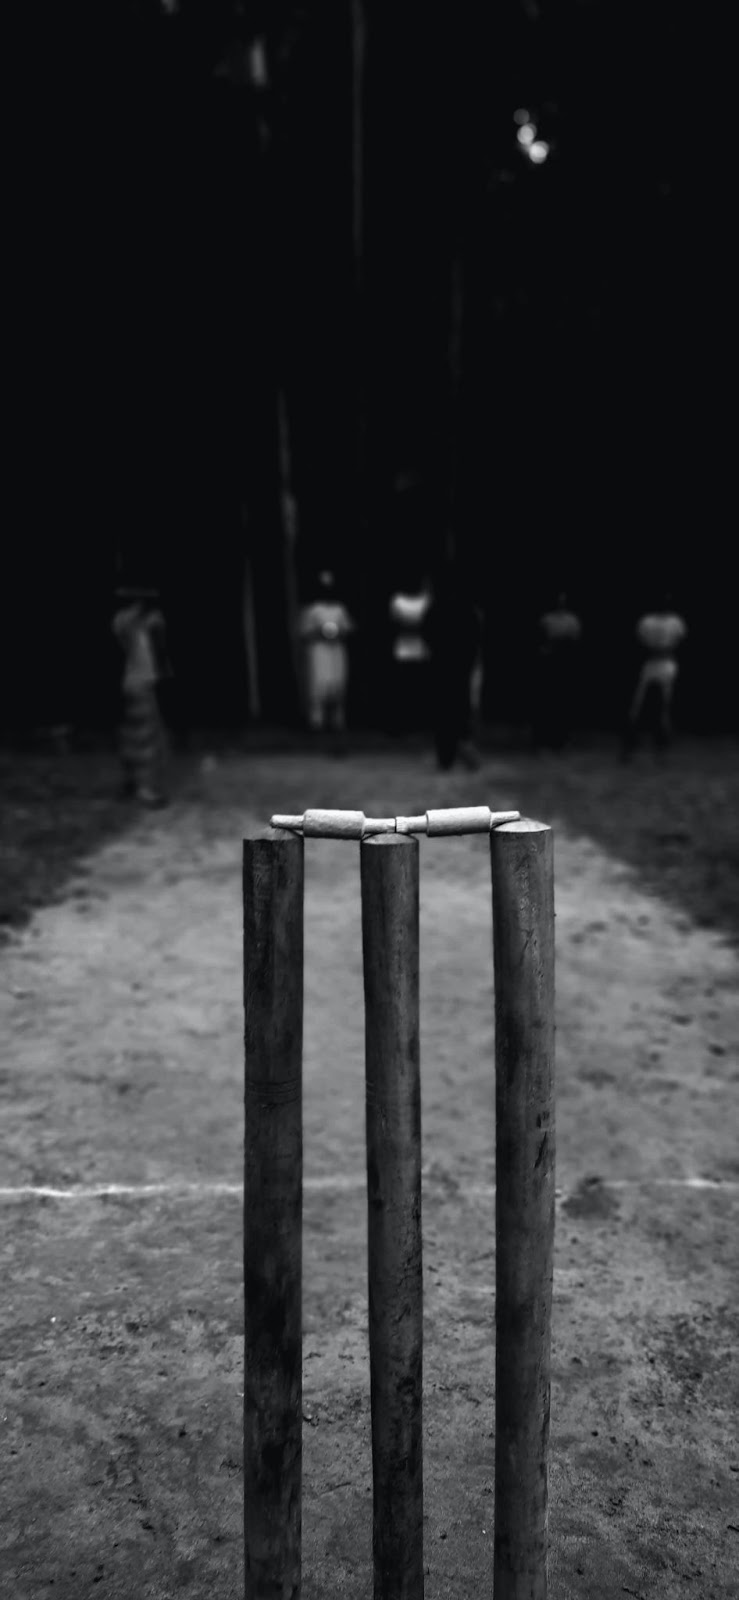 cricket